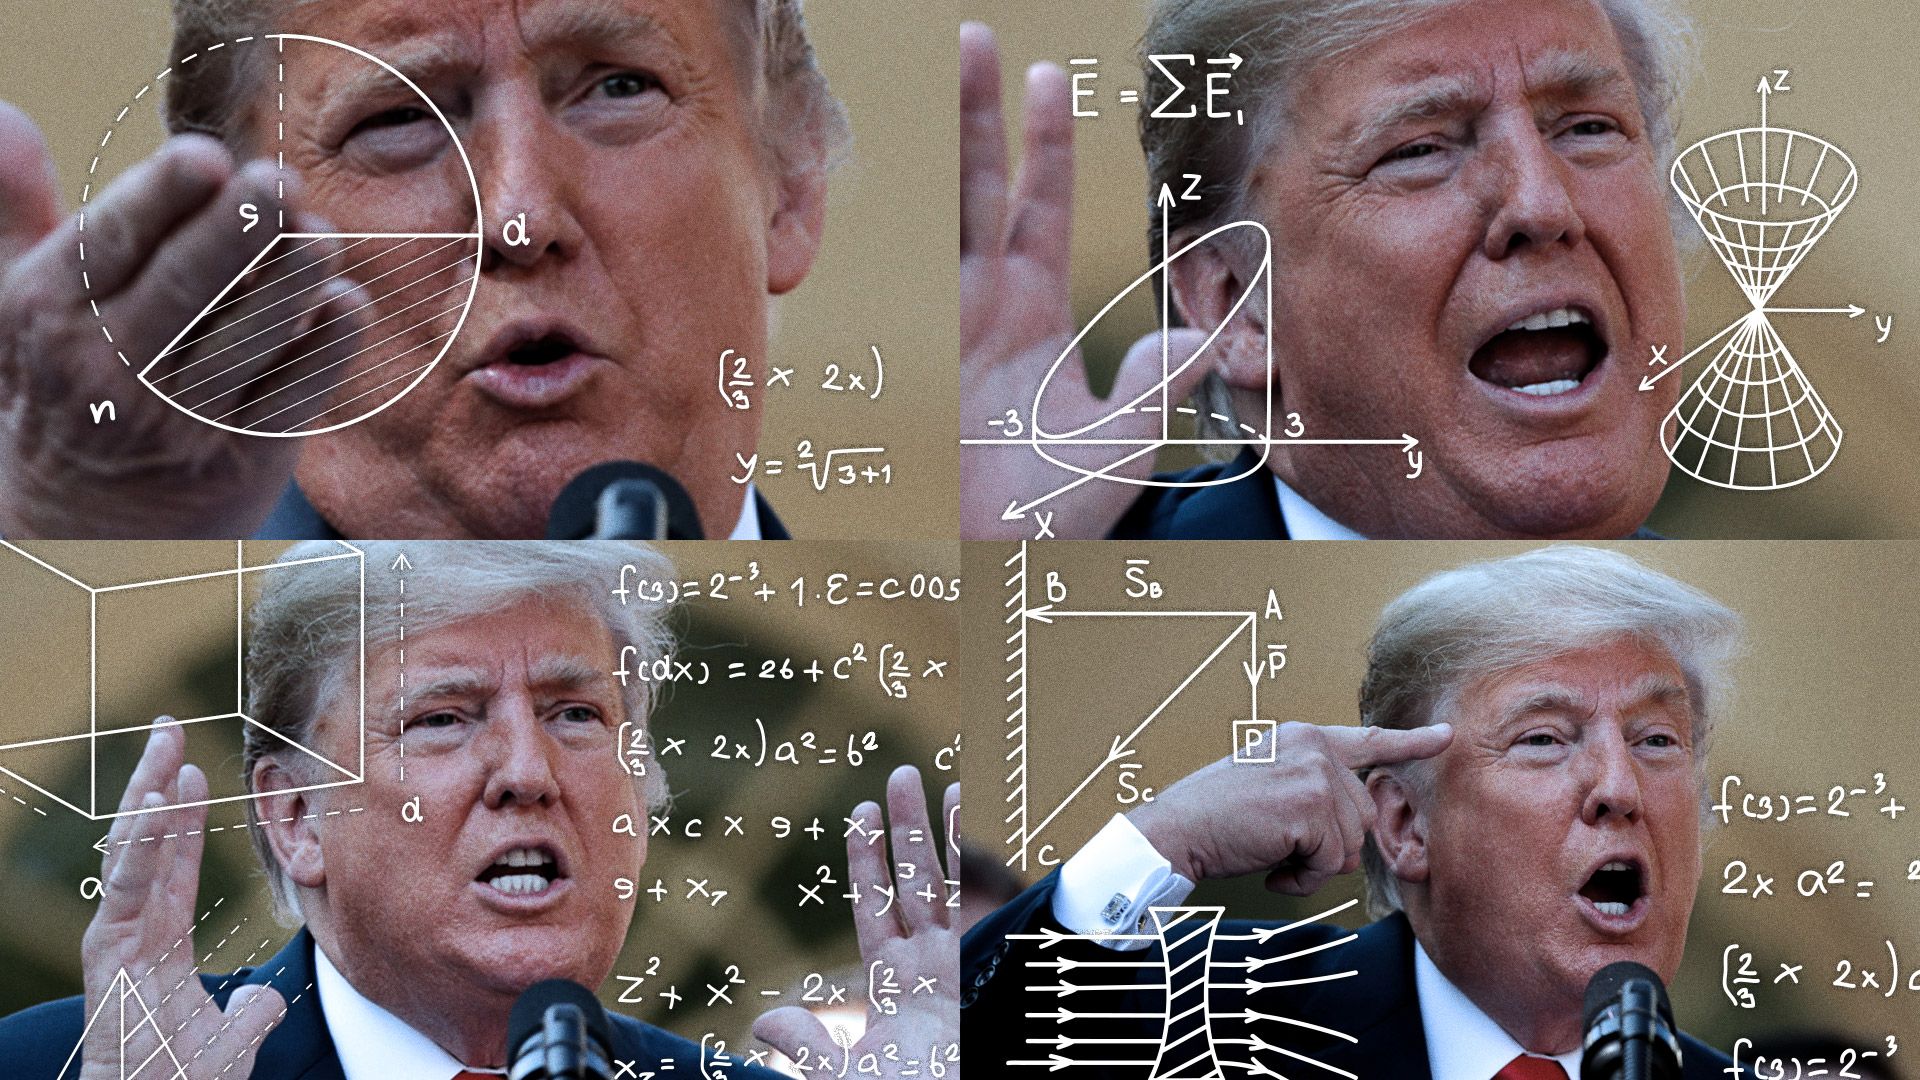 Trump's magic math.